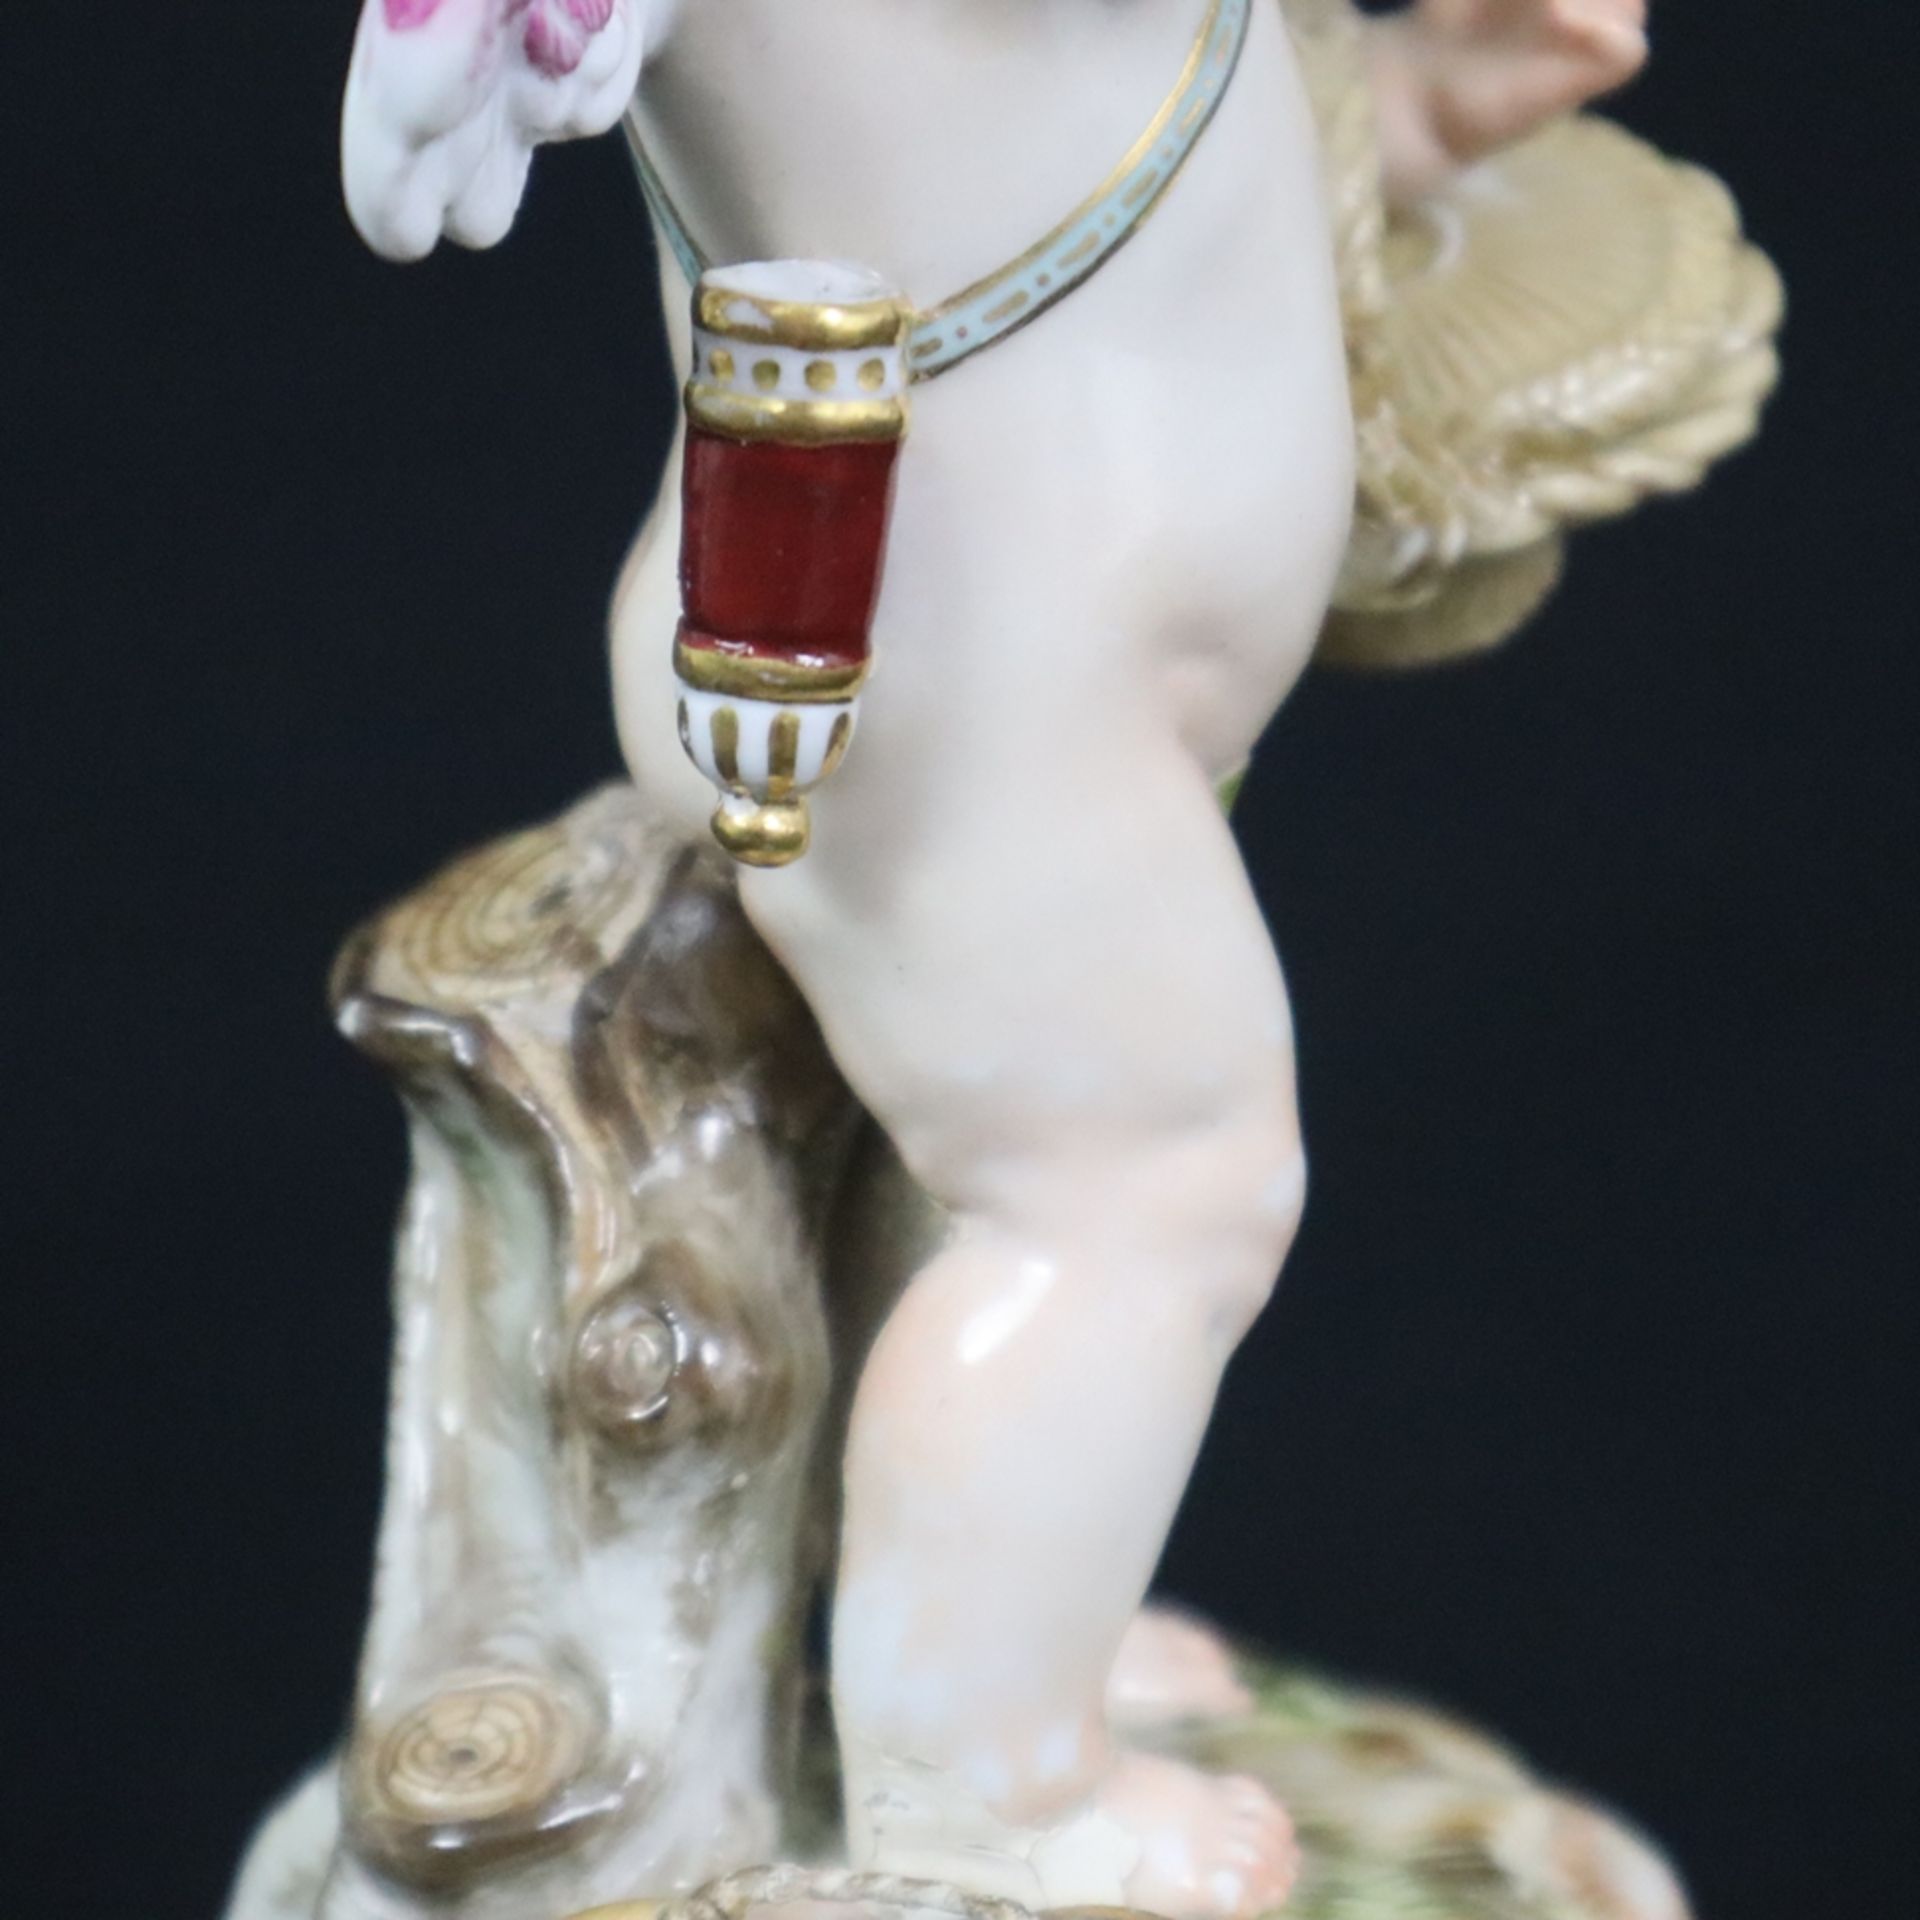 Porzellanfigur "Amor bekommt einen Korb und kratzt sich enttäuscht hinterm Ohr" - Meissen, um 1900, - Bild 6 aus 10